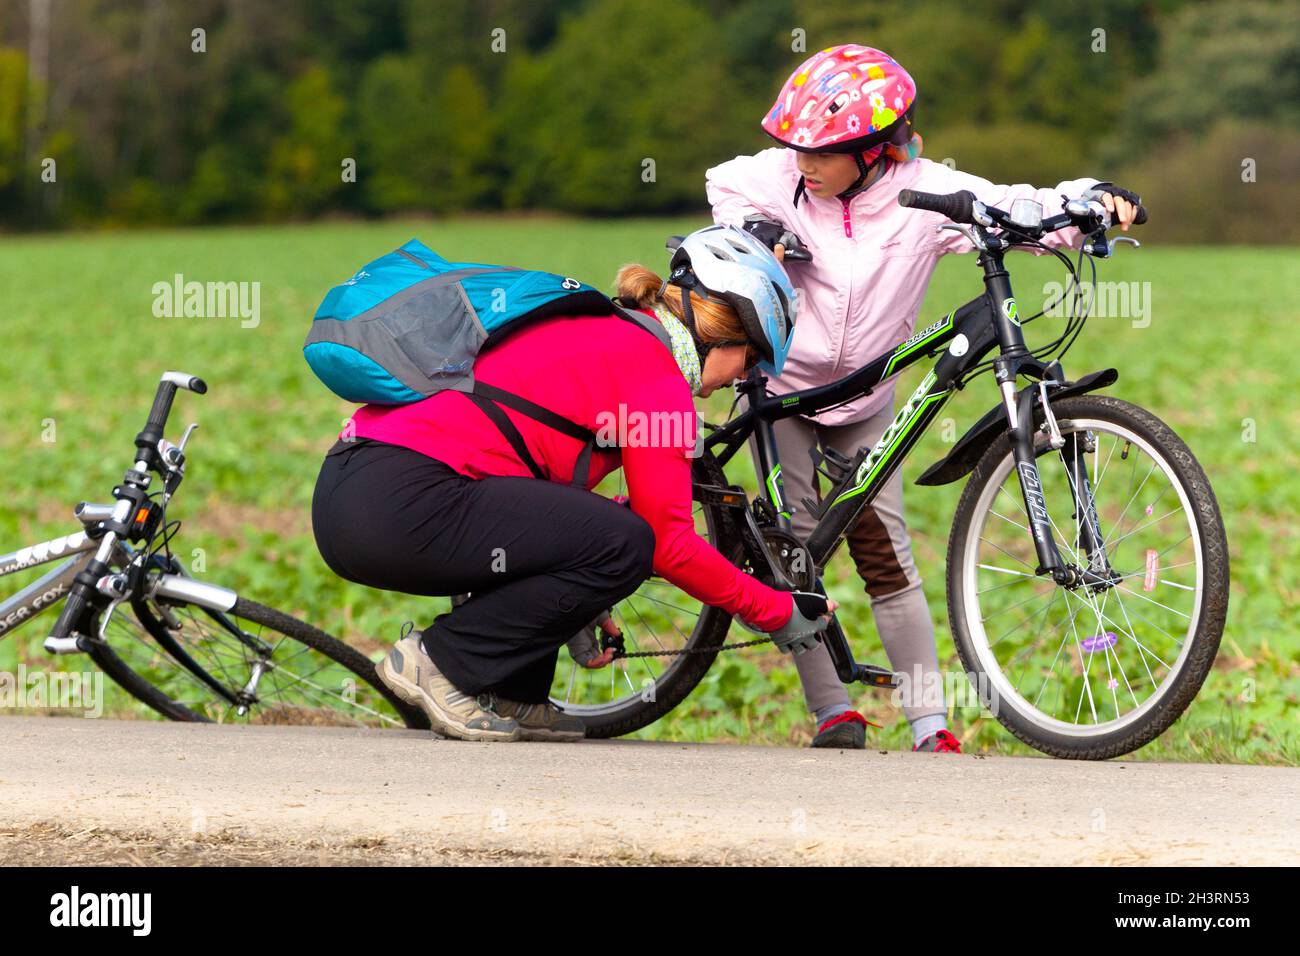 Mujer ayudando a ponerse una cadena caída, reparando bicicleta, un niño en casco, bicicleta Foto de stock